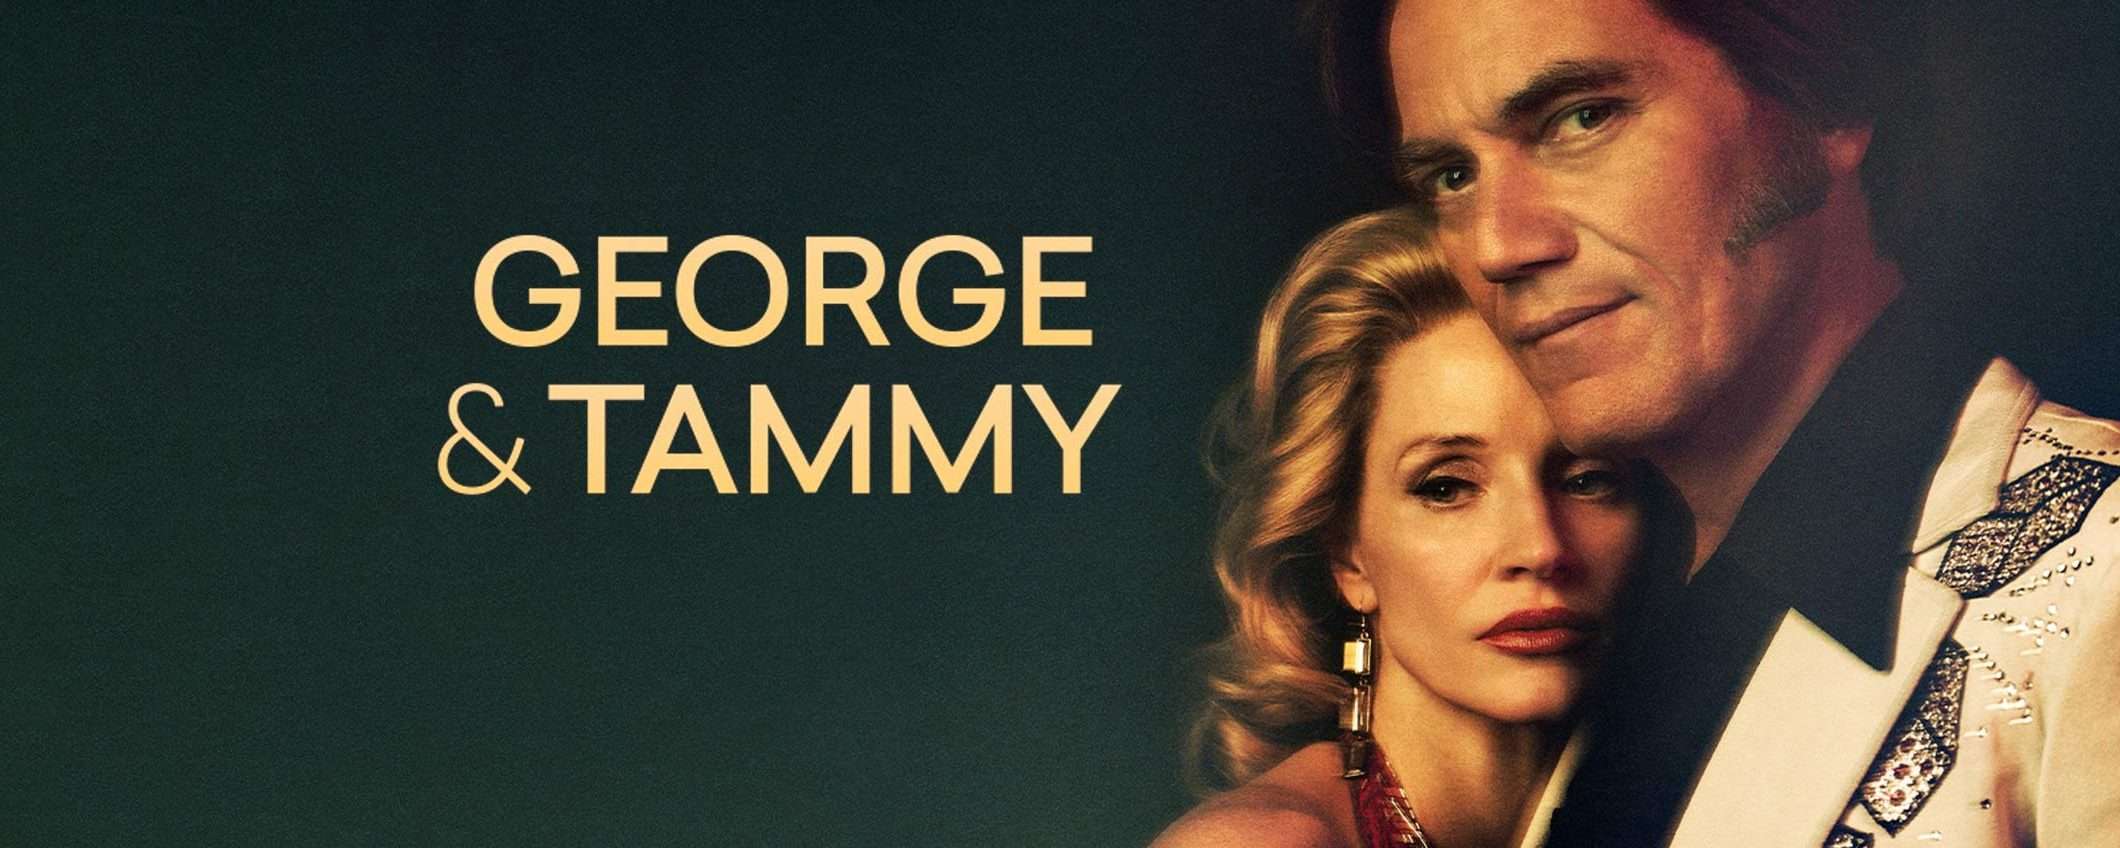 George & Tammy: guarda la nuova serie in streaming